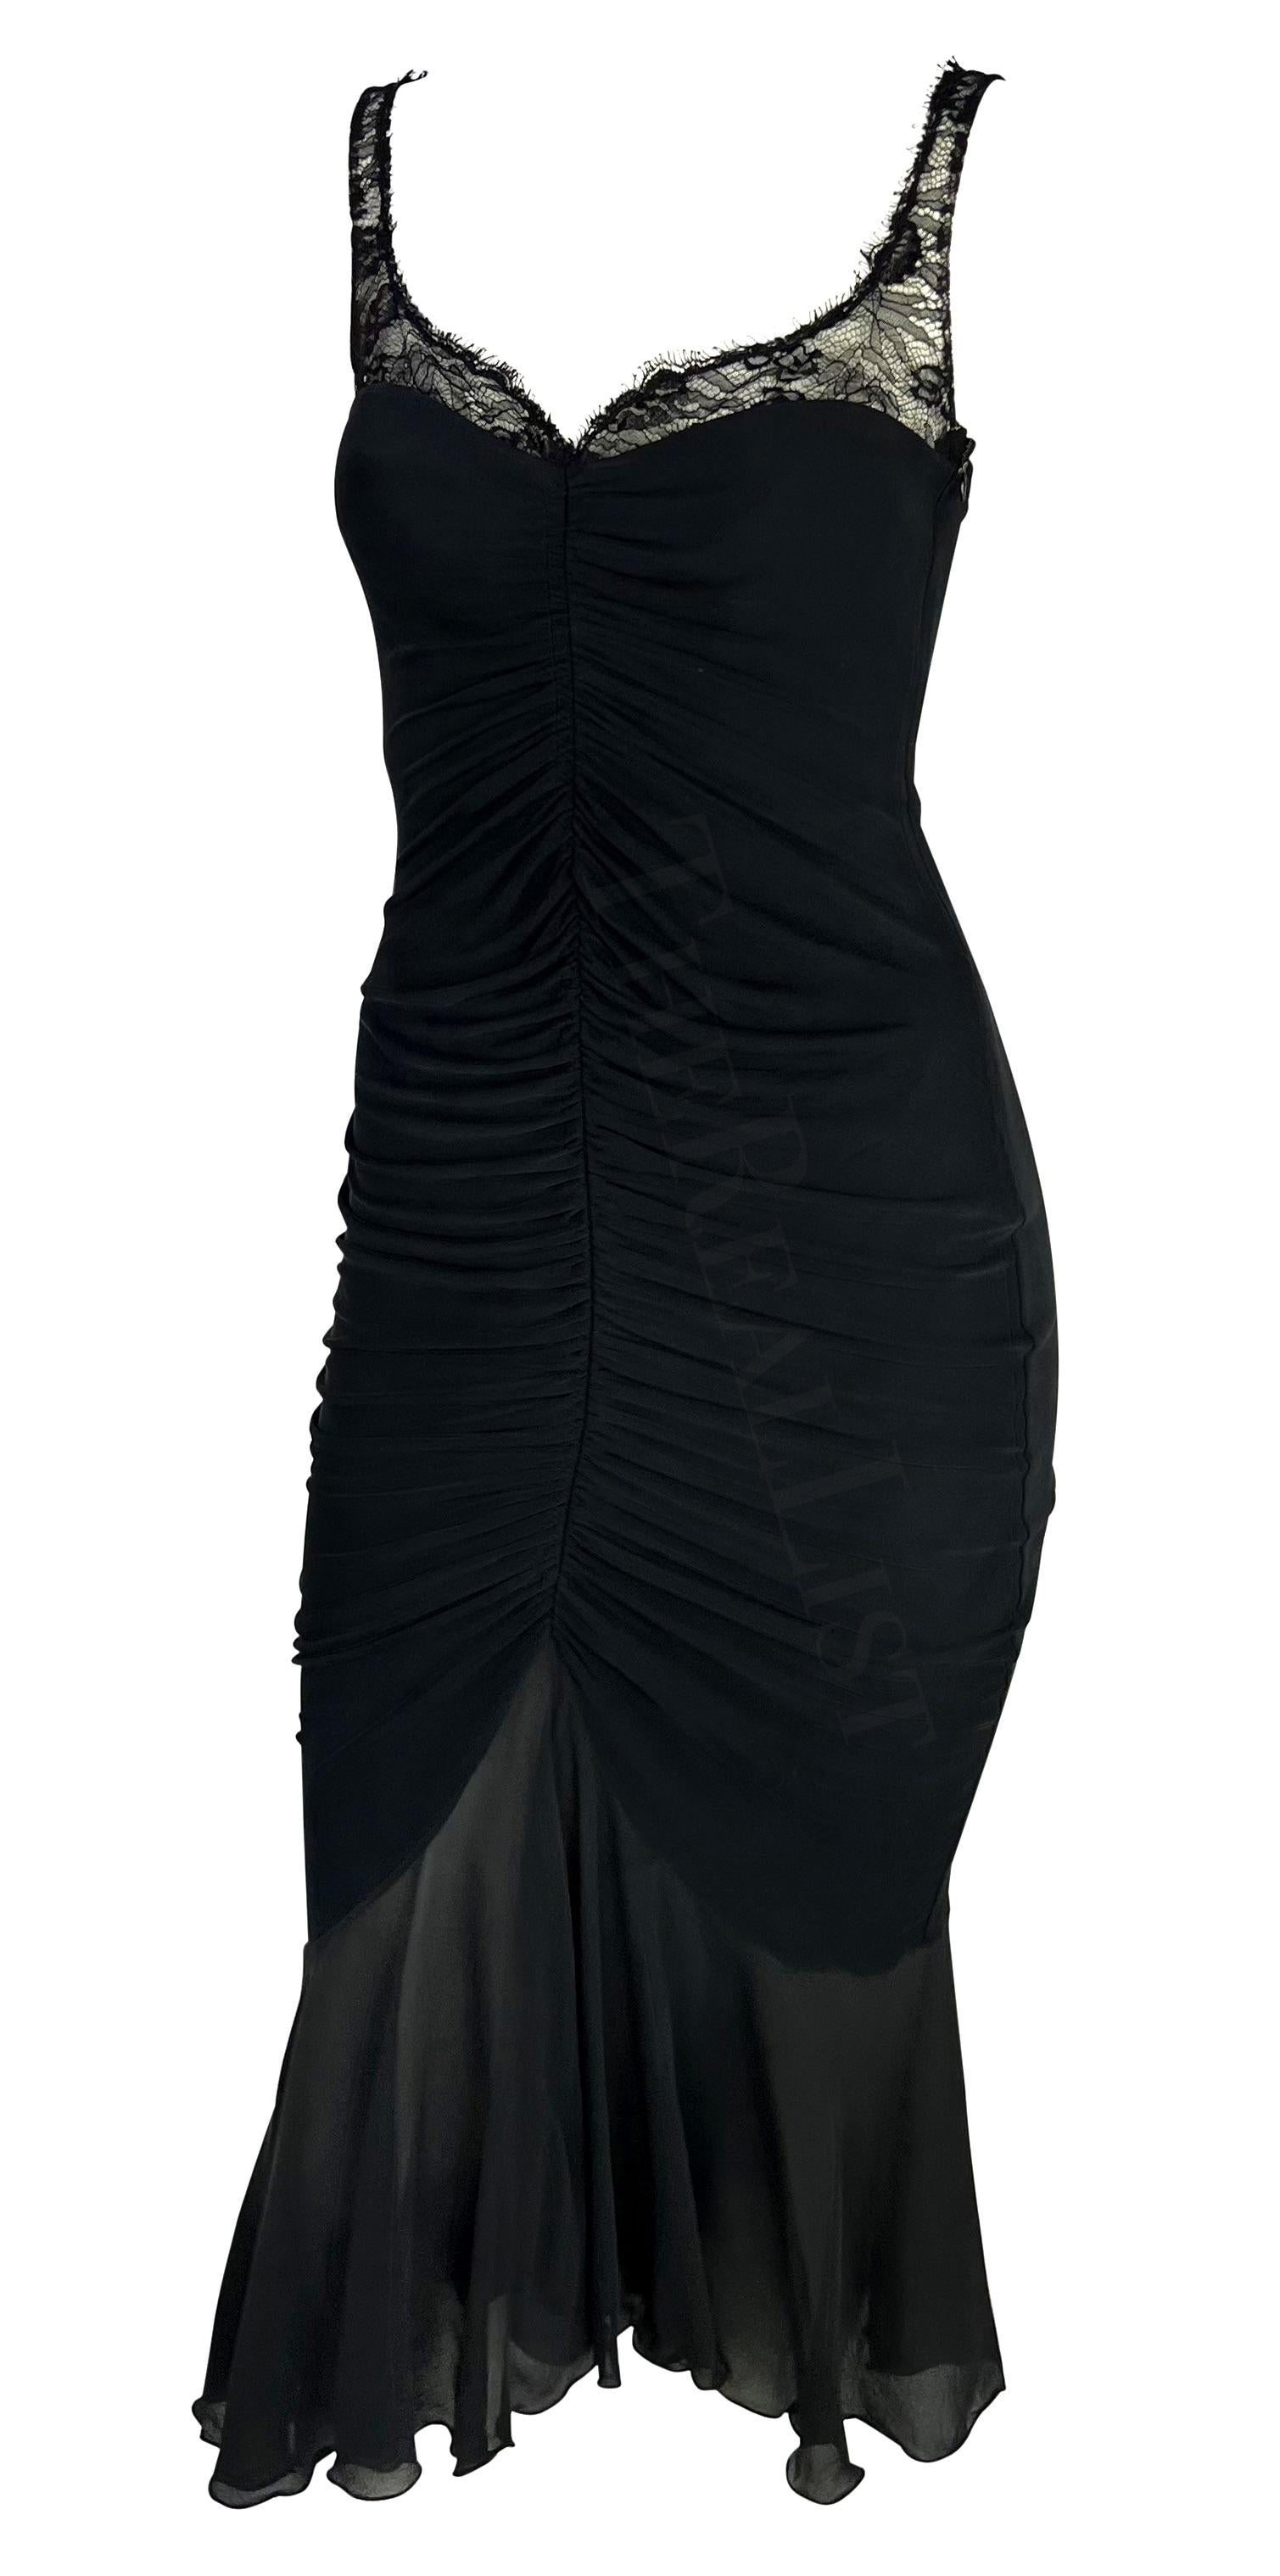 Ich präsentiere ein schwarzes Emanuel Ungaro Bodycon-Kleid aus den 2000er Jahren mit Spitzenakzenten. Sexy Rüschen strahlen von der Mittelnaht aus und führen zu einem transparenten ausgestellten Rock. Transparente Spitze zaubert einen herzförmigen